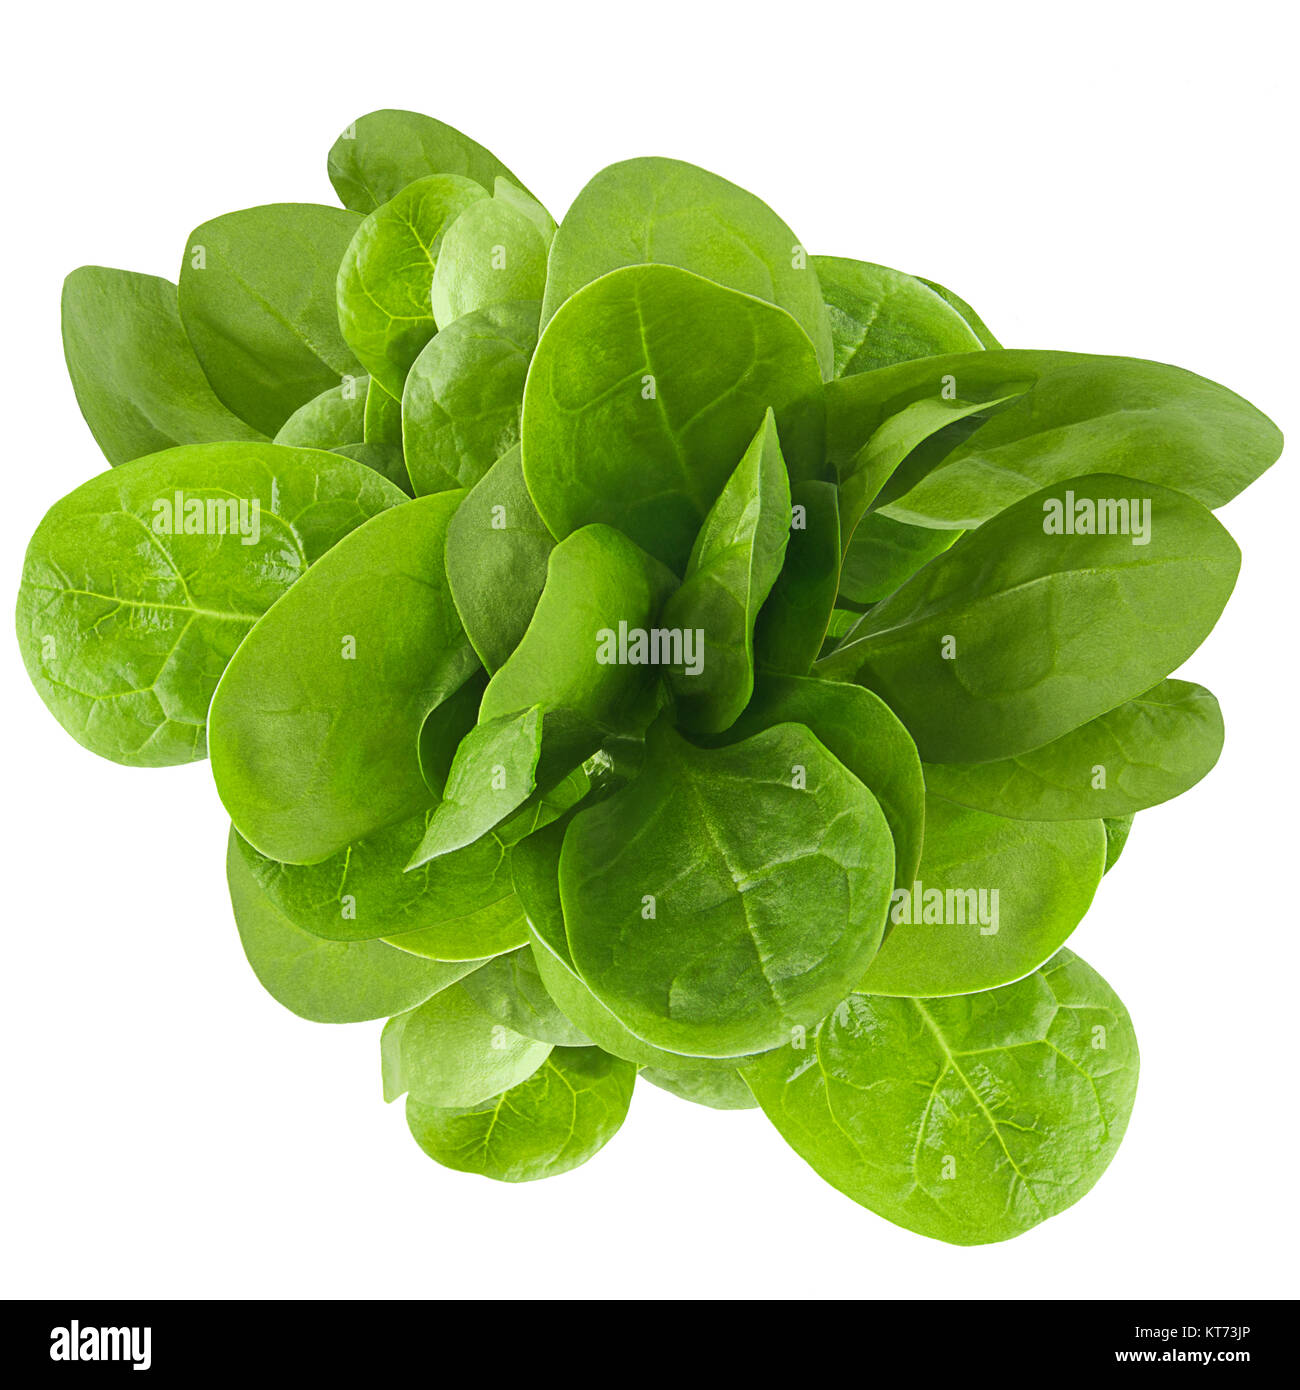 Isolato di valeriana fresche foglie su sfondo bianco Foto stock - Alamy